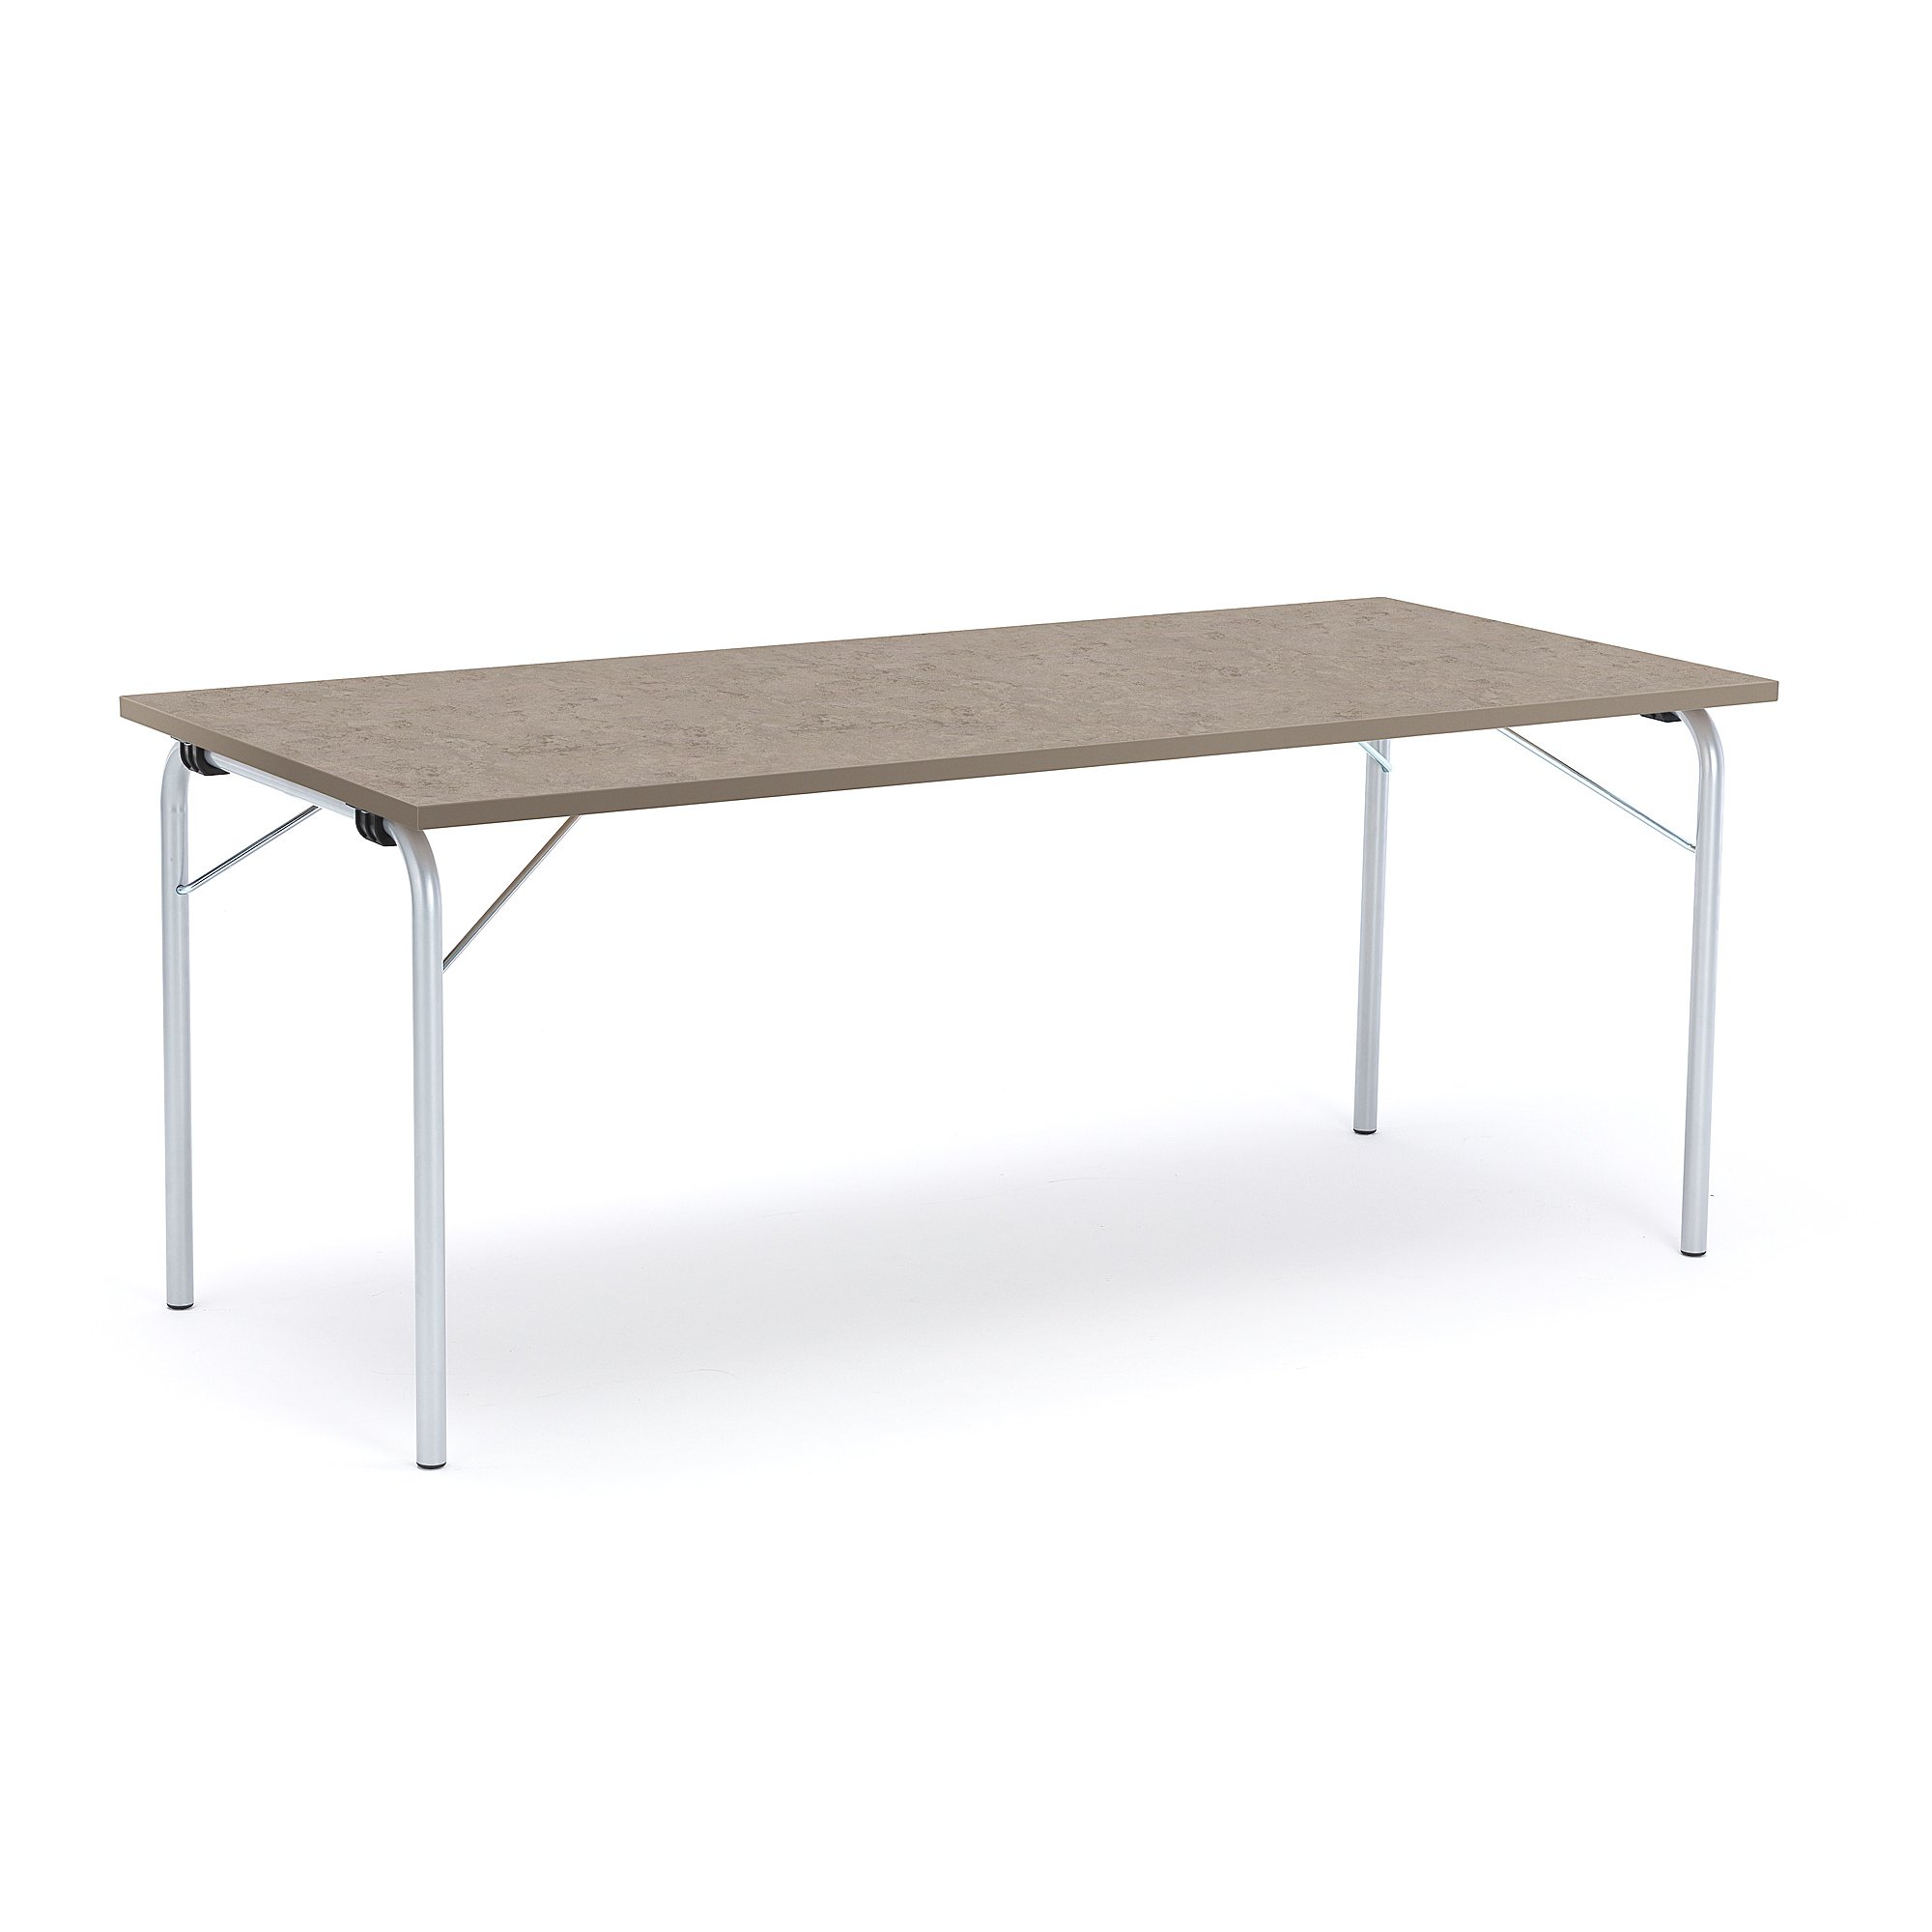 Skládací stůl NICKE, 1800x800x720 mm, stříbrný rám, světle šedé linoleum